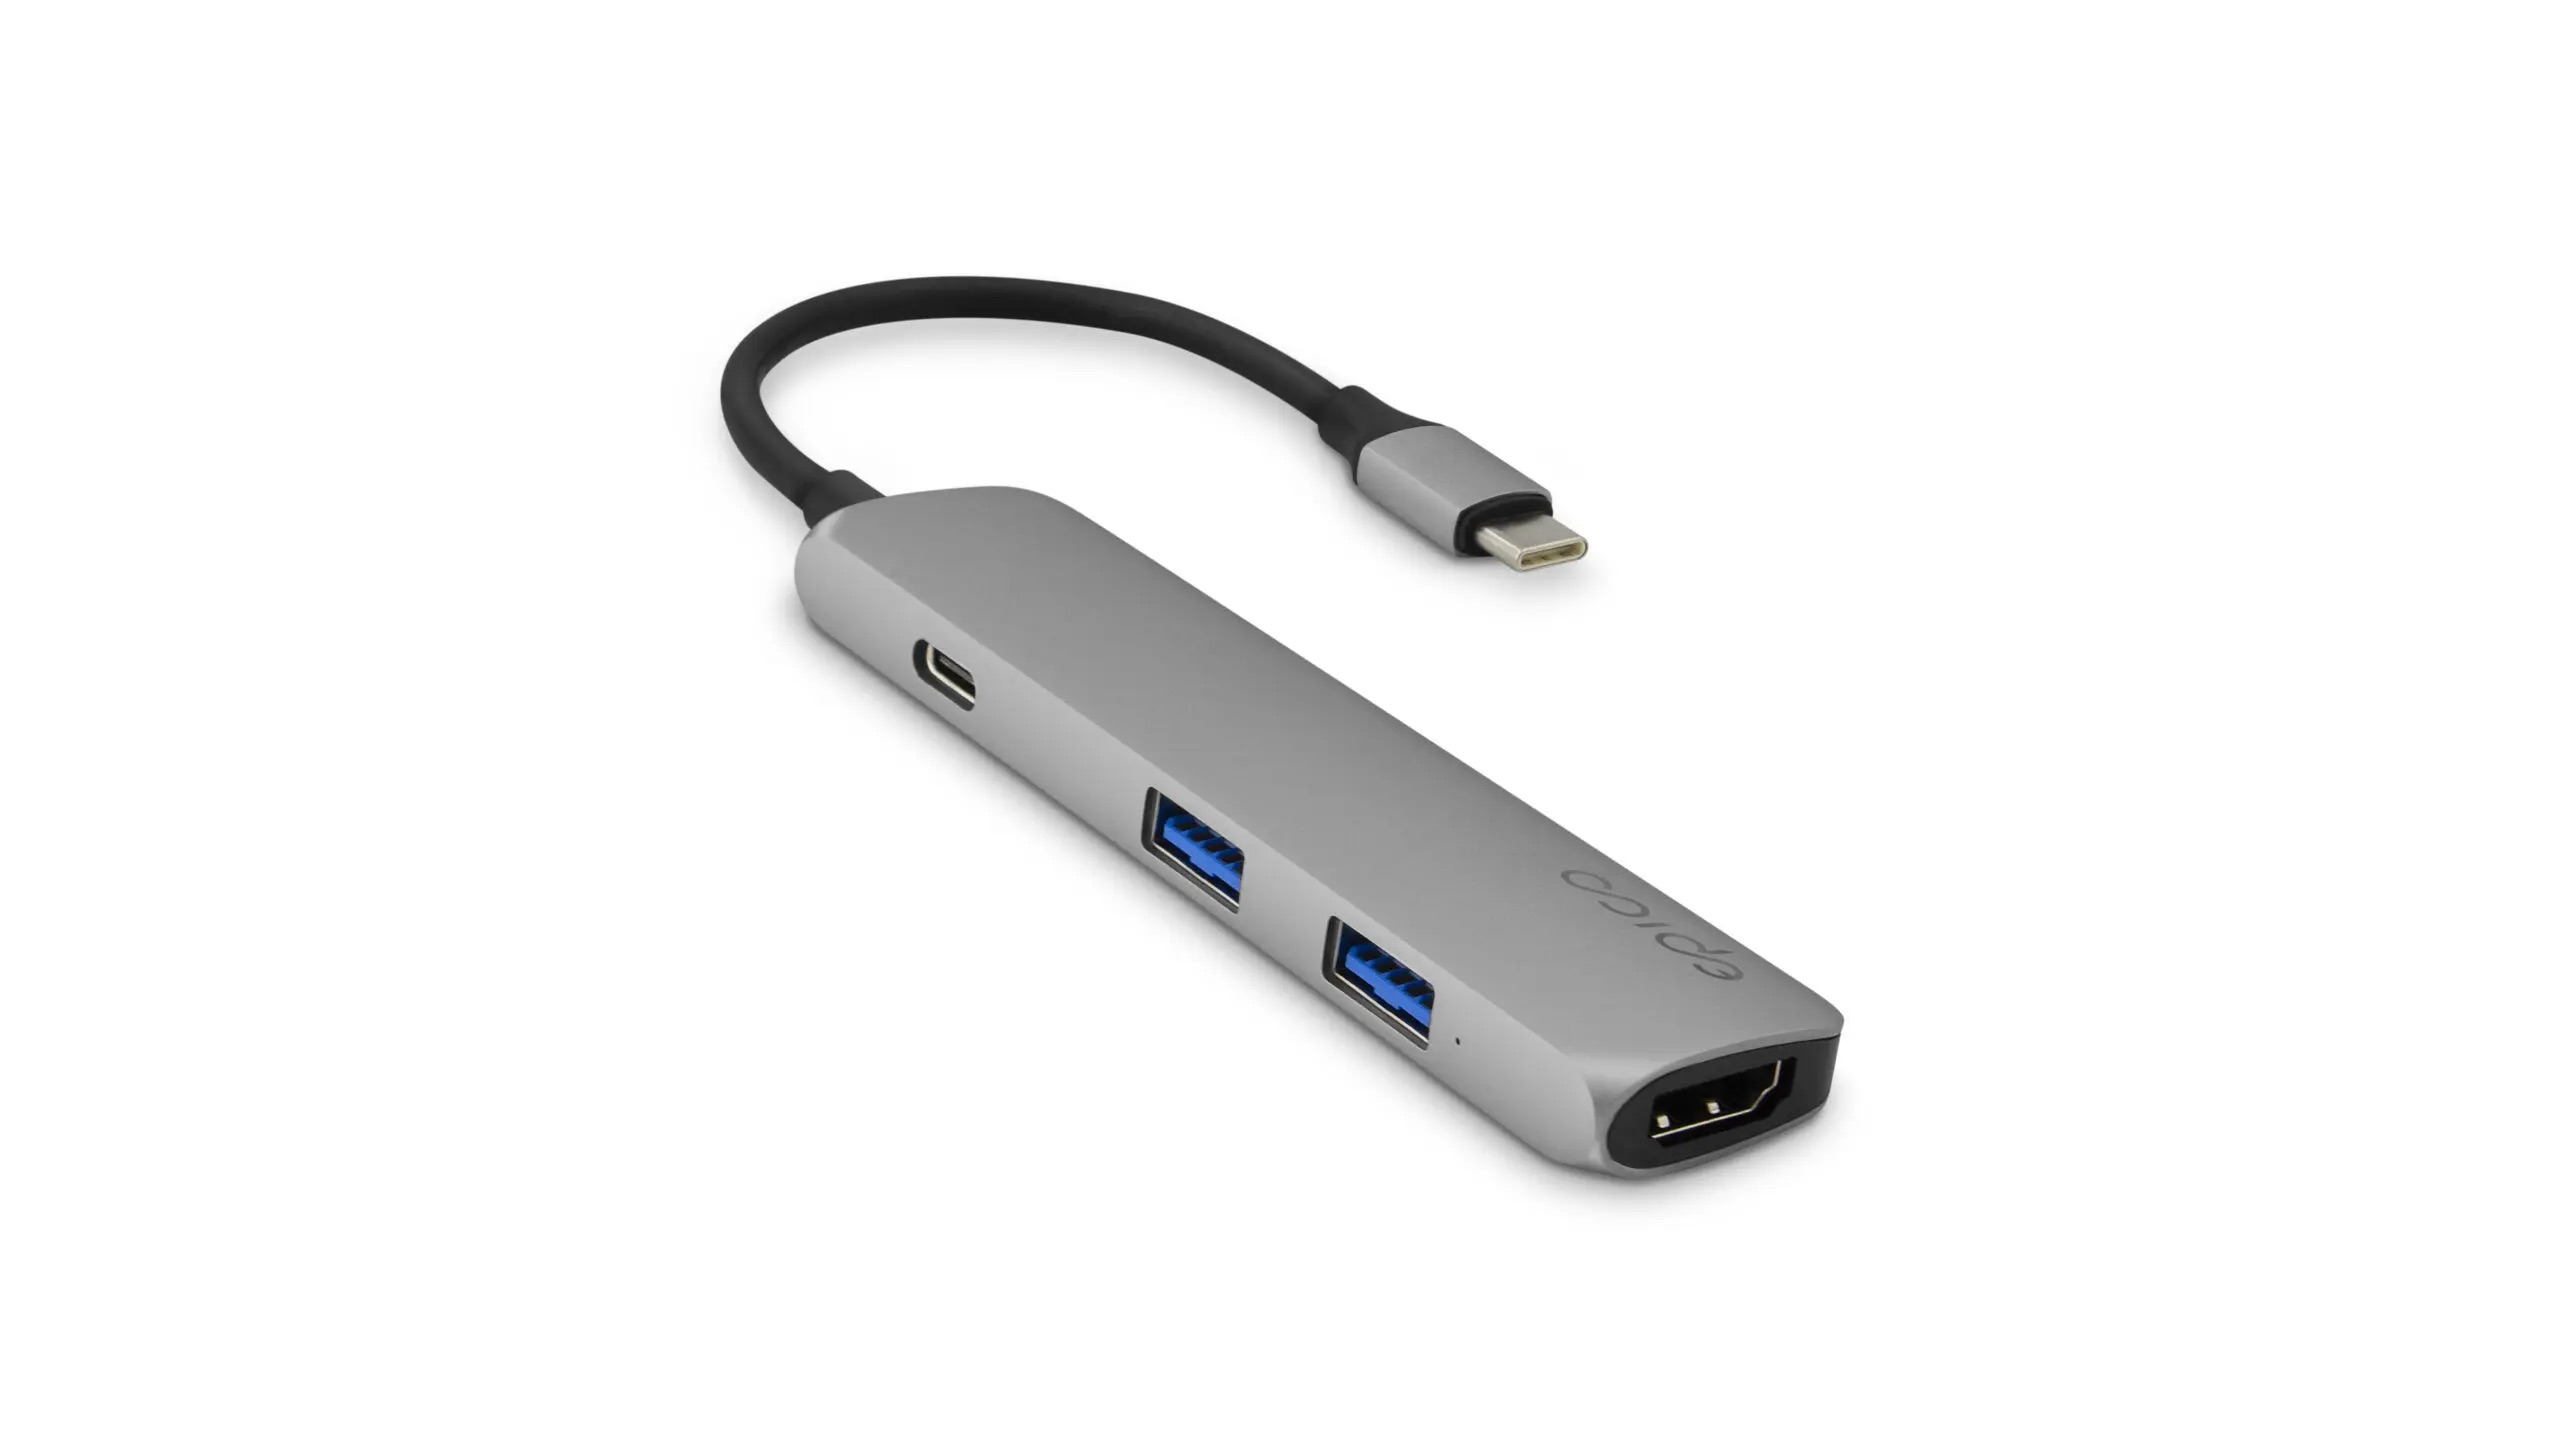 Epico USB Type-C HUB 4K HDMI - space gray/black